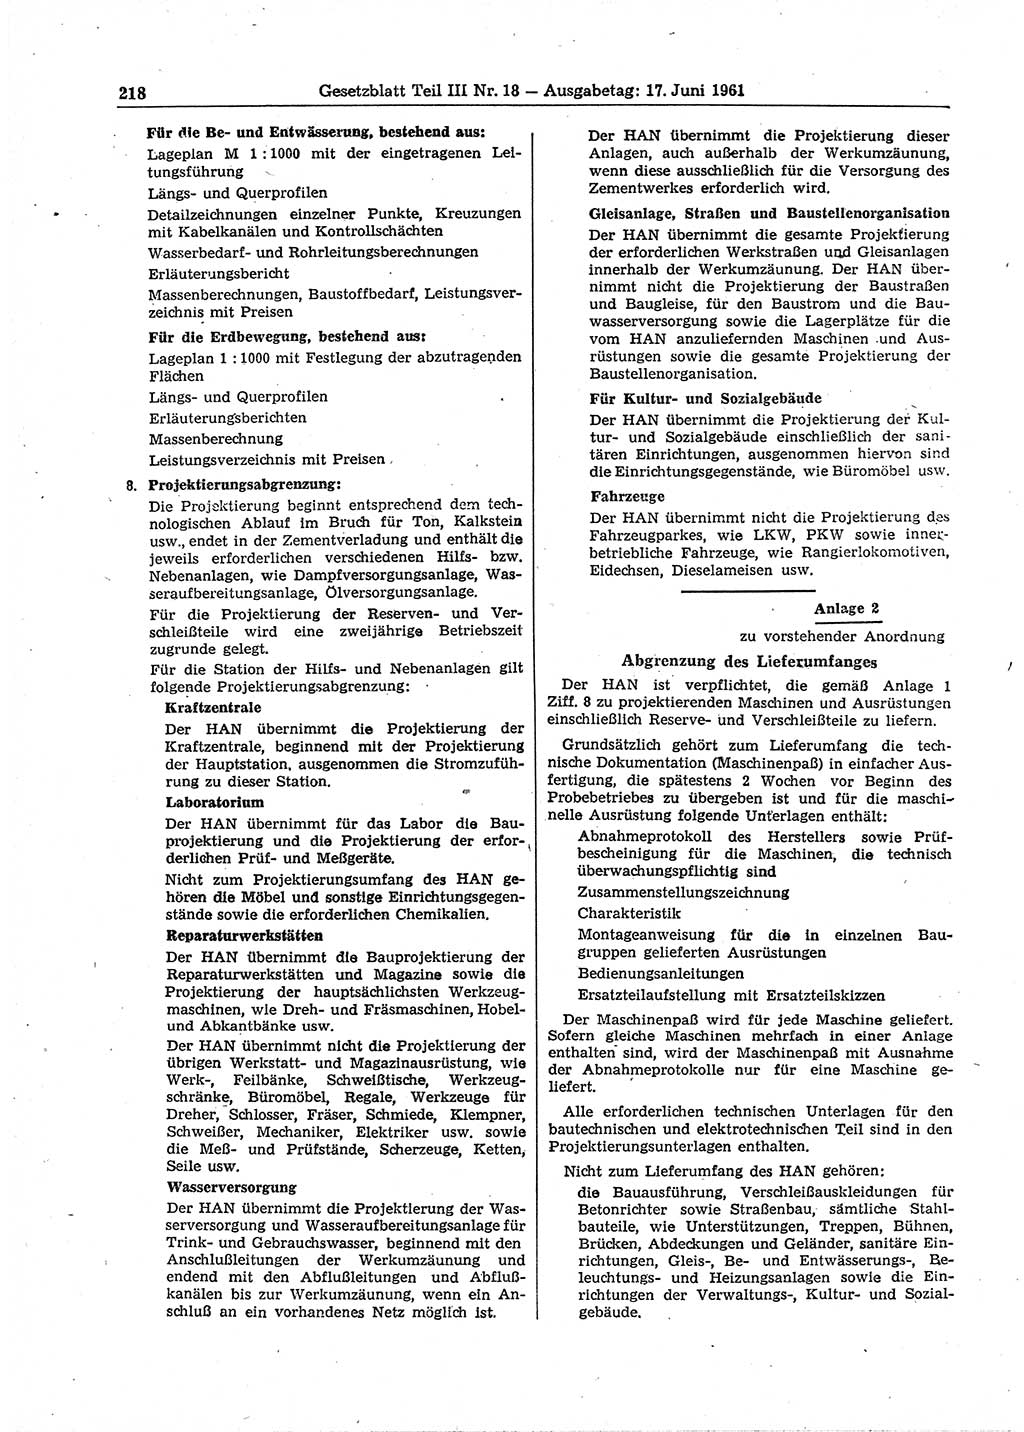 Gesetzblatt (GBl.) der Deutschen Demokratischen Republik (DDR) Teil ⅠⅠⅠ 1961, Seite 218 (GBl. DDR ⅠⅠⅠ 1961, S. 218)